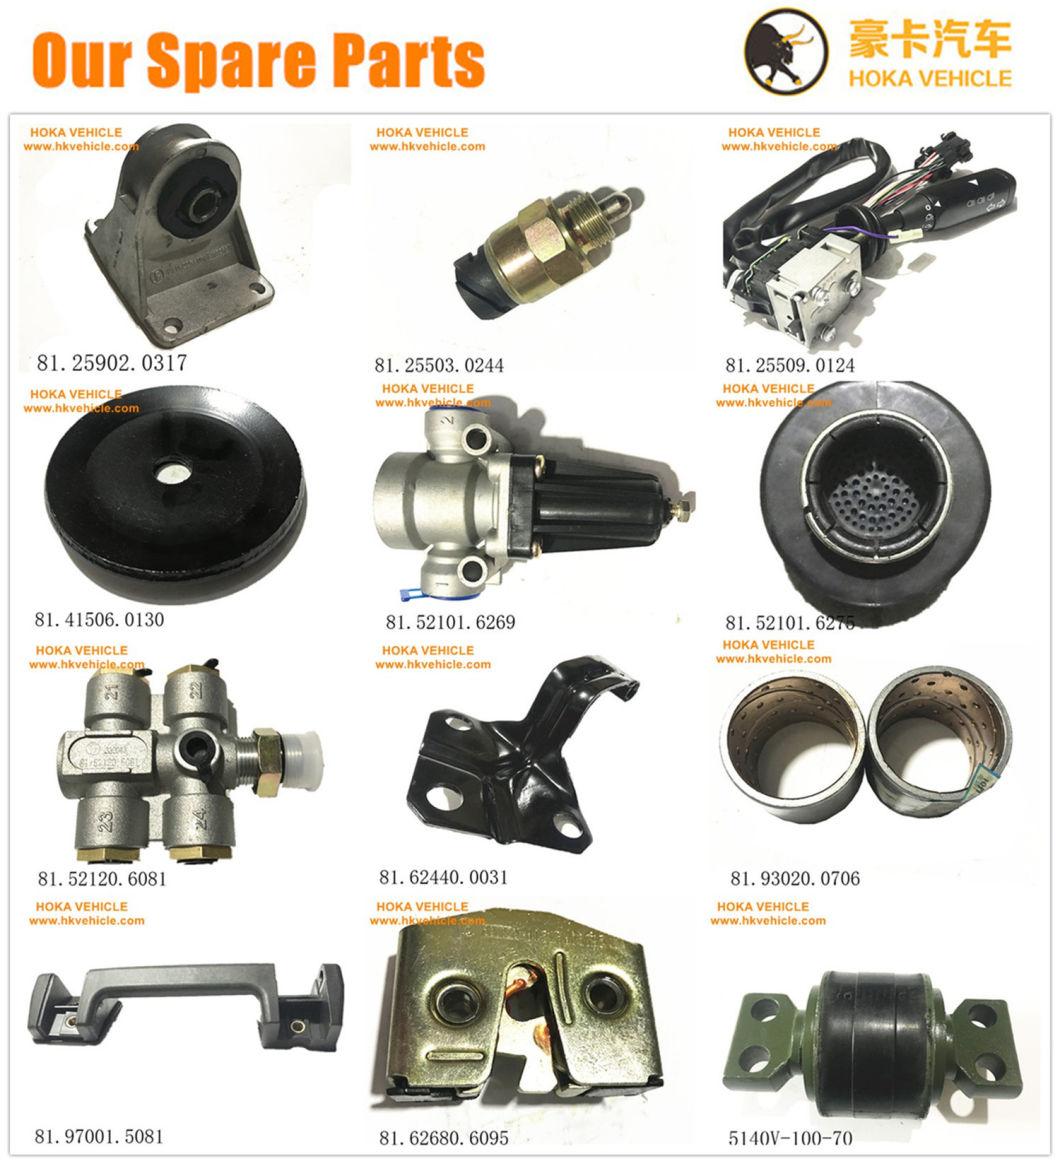 Original Liugong Wheel Loader Spare Parts Steering Cylinder Repair Kit Sp134017